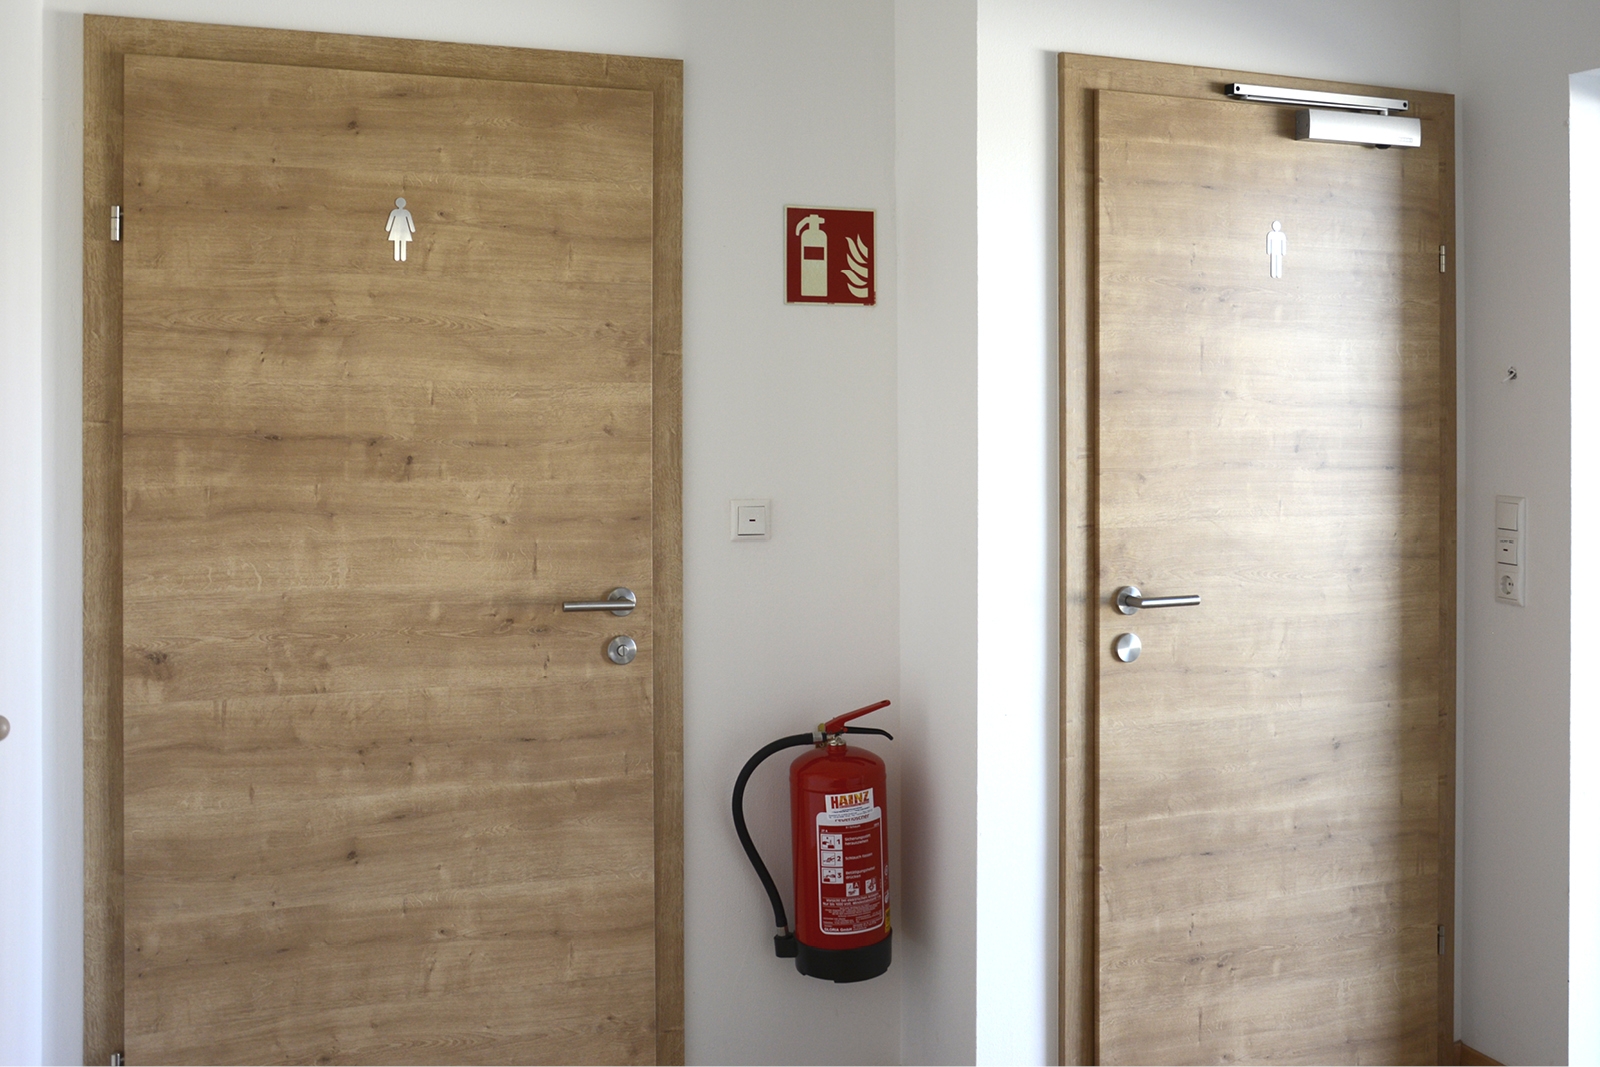 Türen, Beschläge und Zimmertüren aus Holz 013 © Wohnkultur Strantz / Michael Strantz